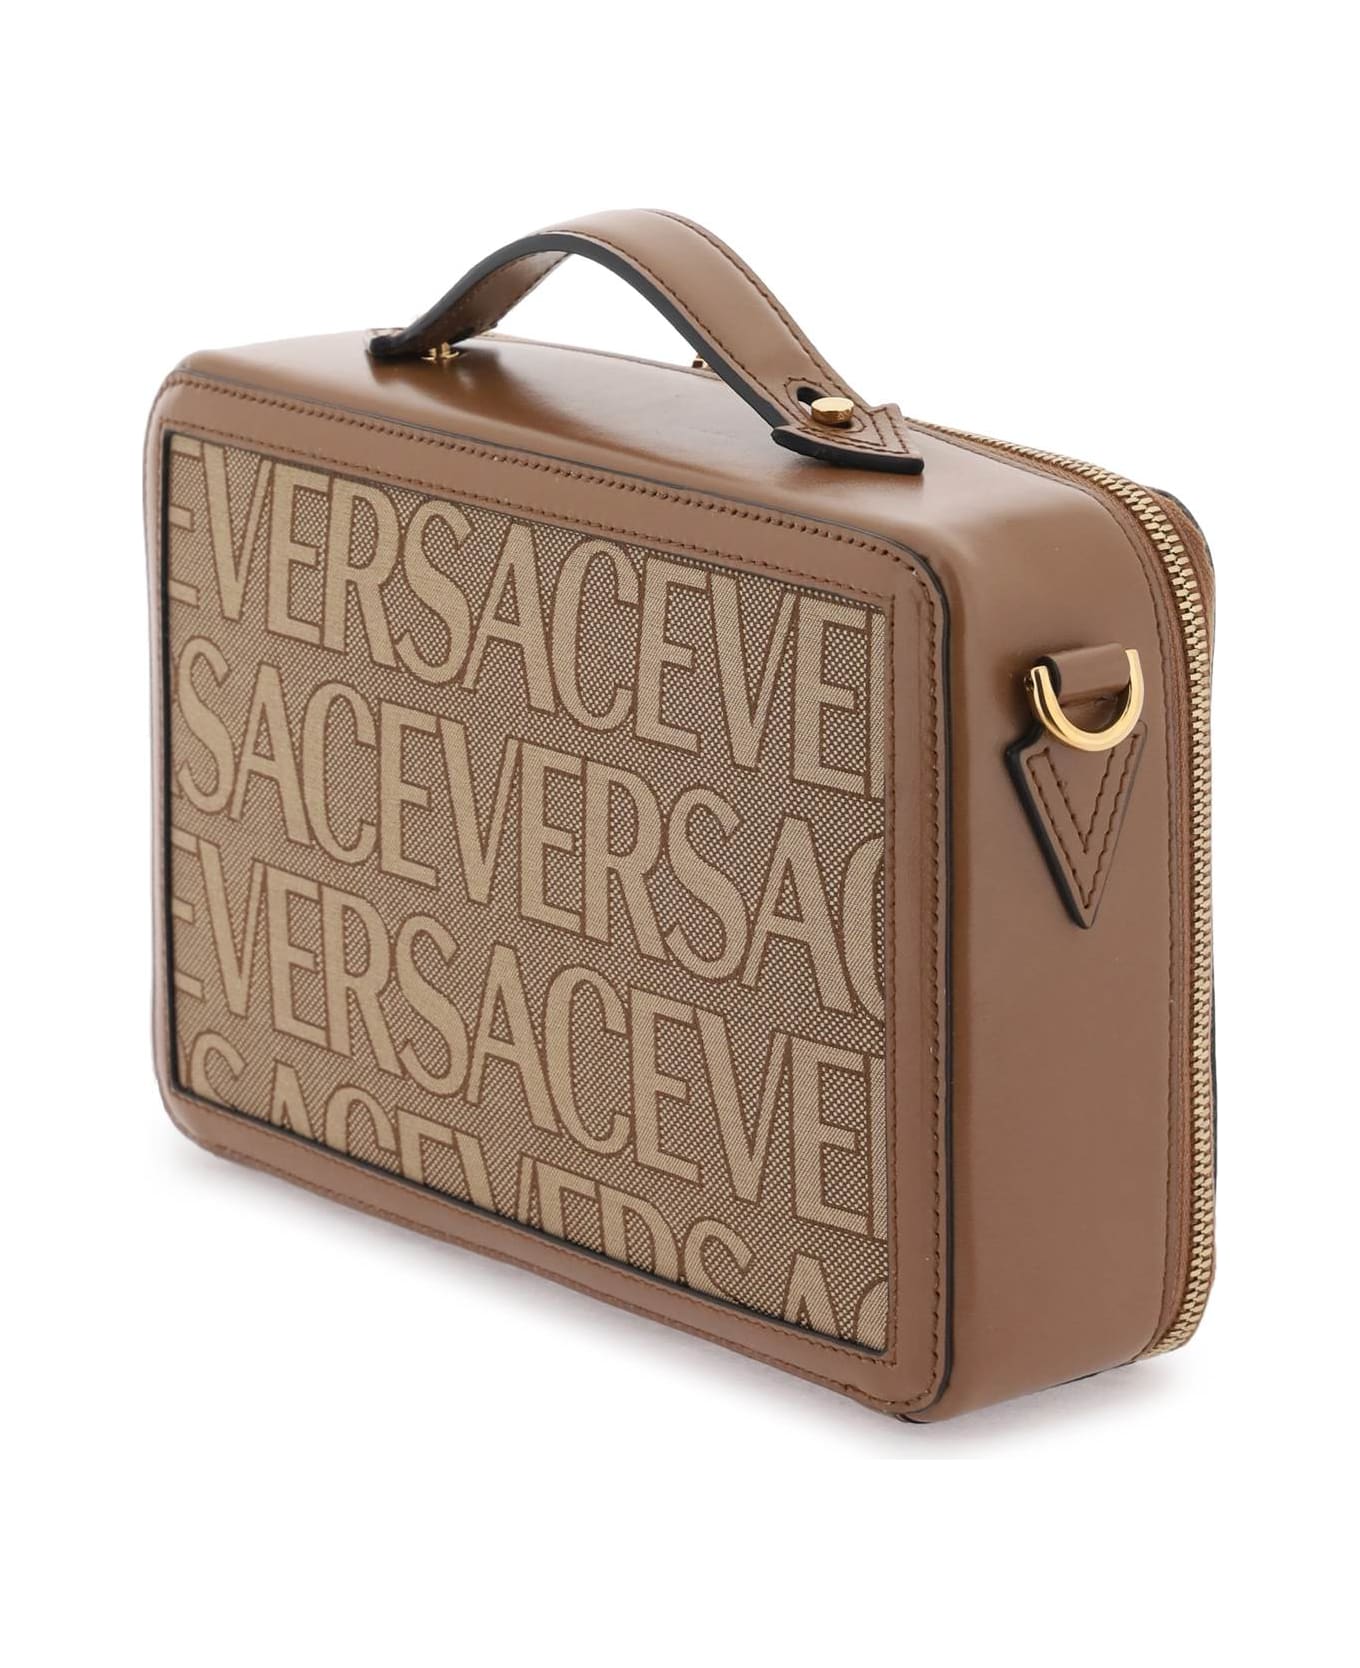 Versace Canvas Messenger Bag - Beige トートバッグ